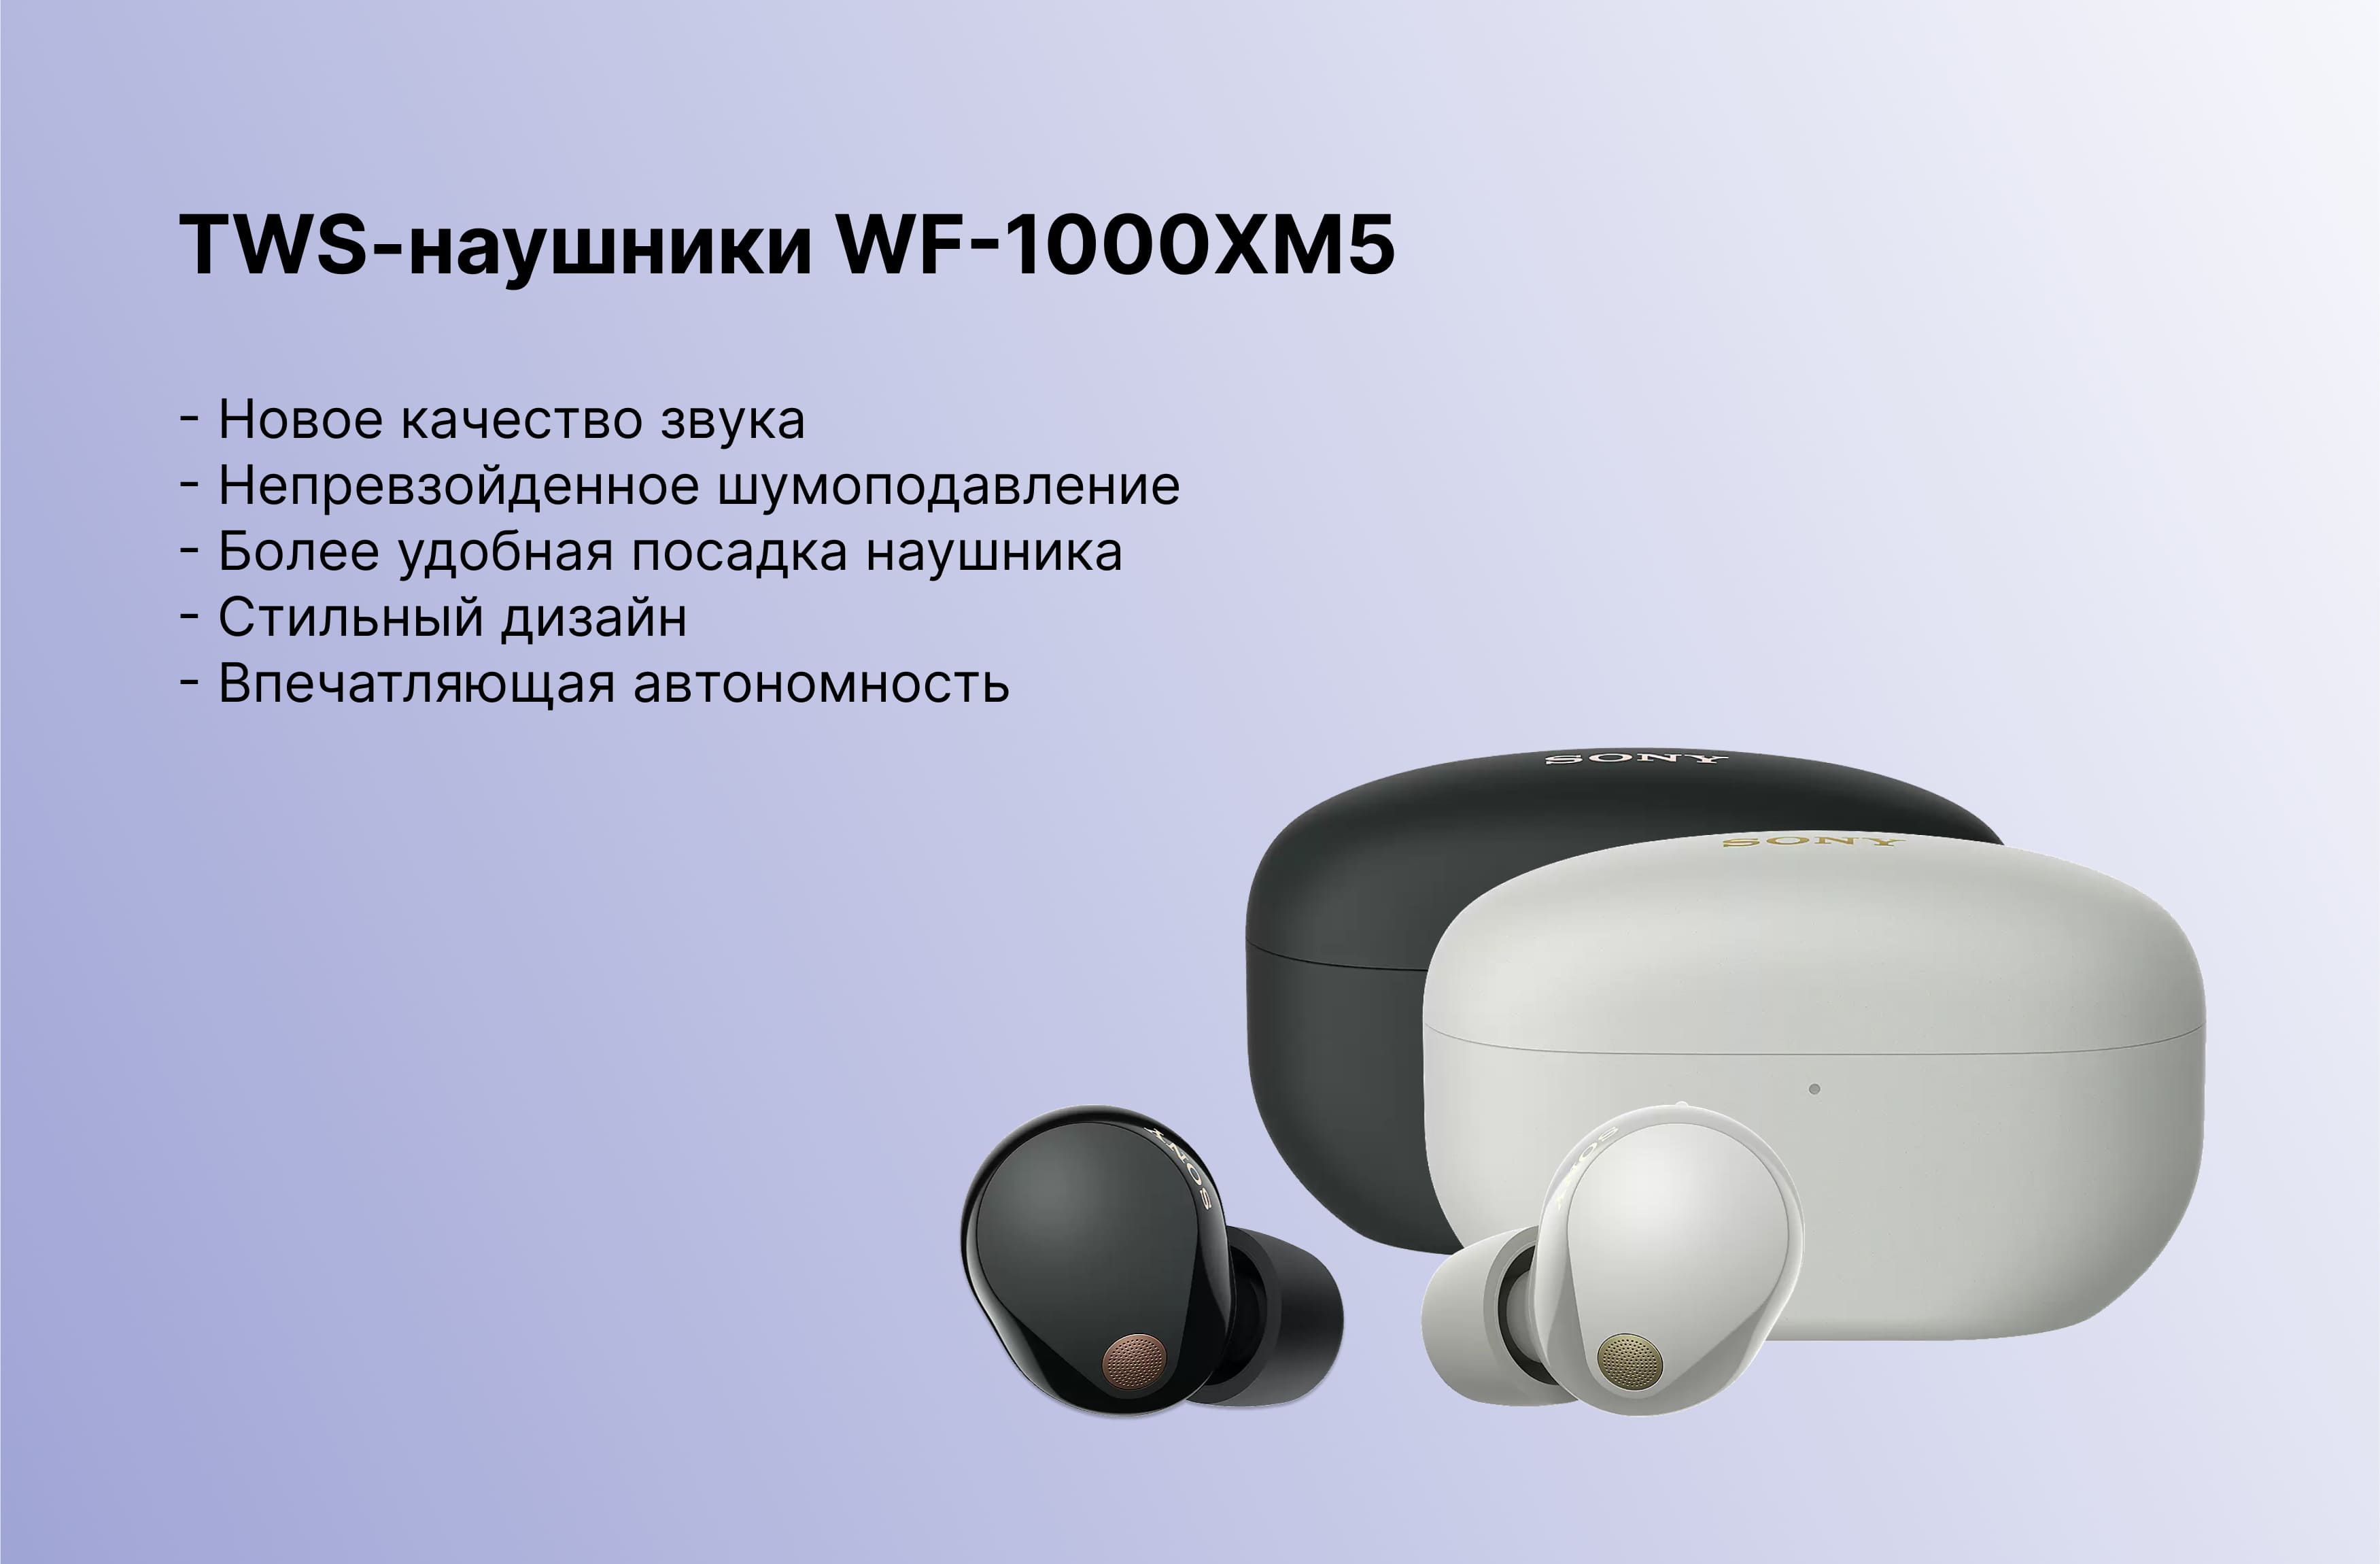 Sony WF-1000XM5